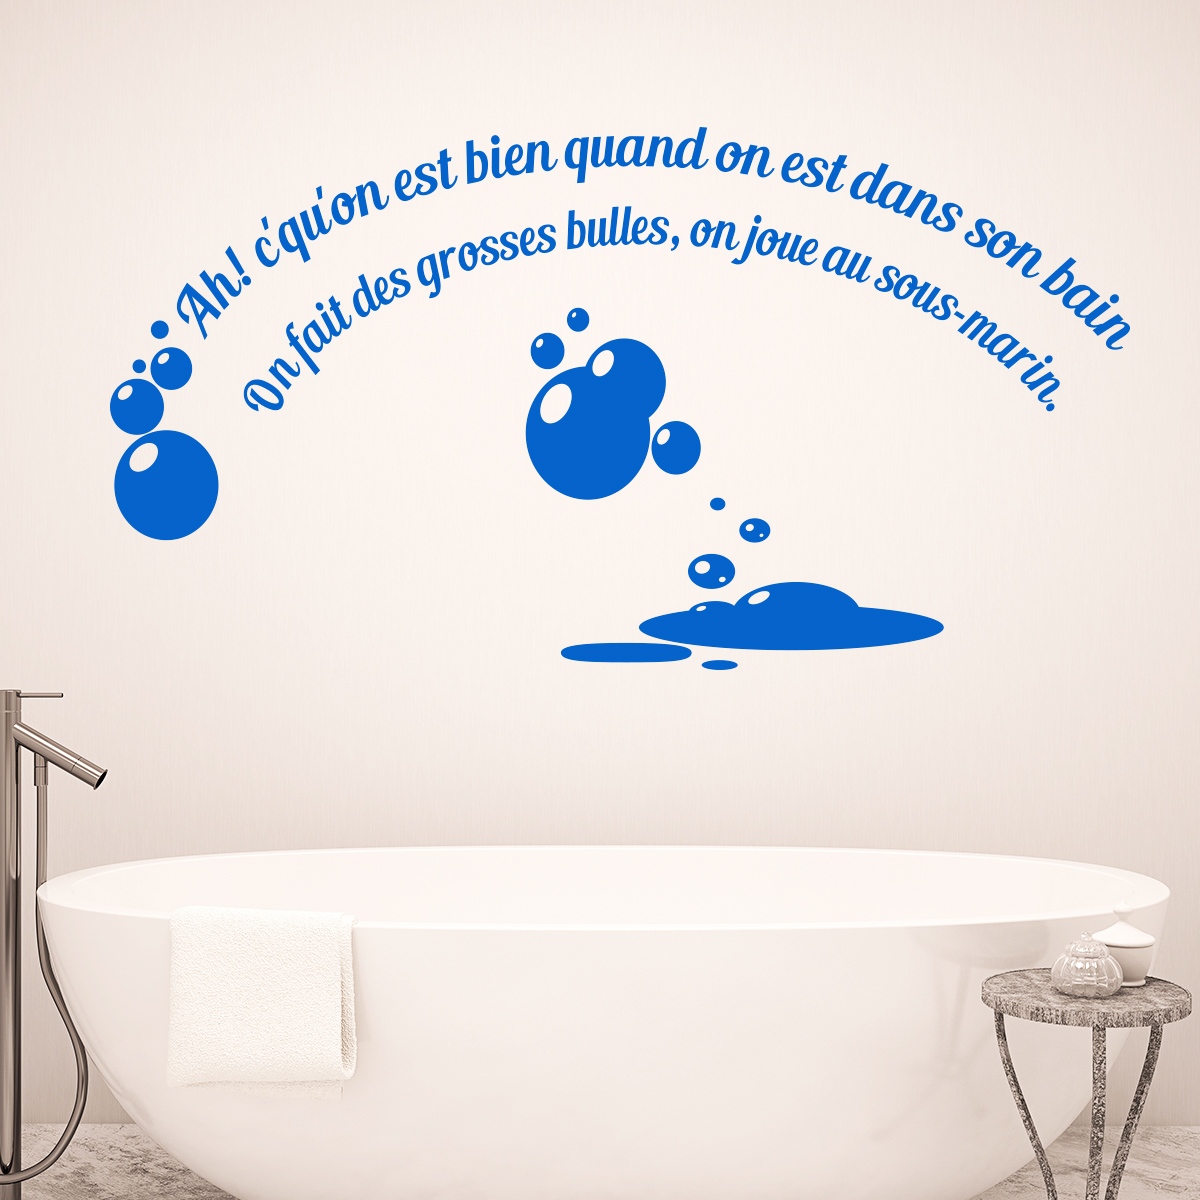 Sticker citation salle de bain quand on est dans son bain